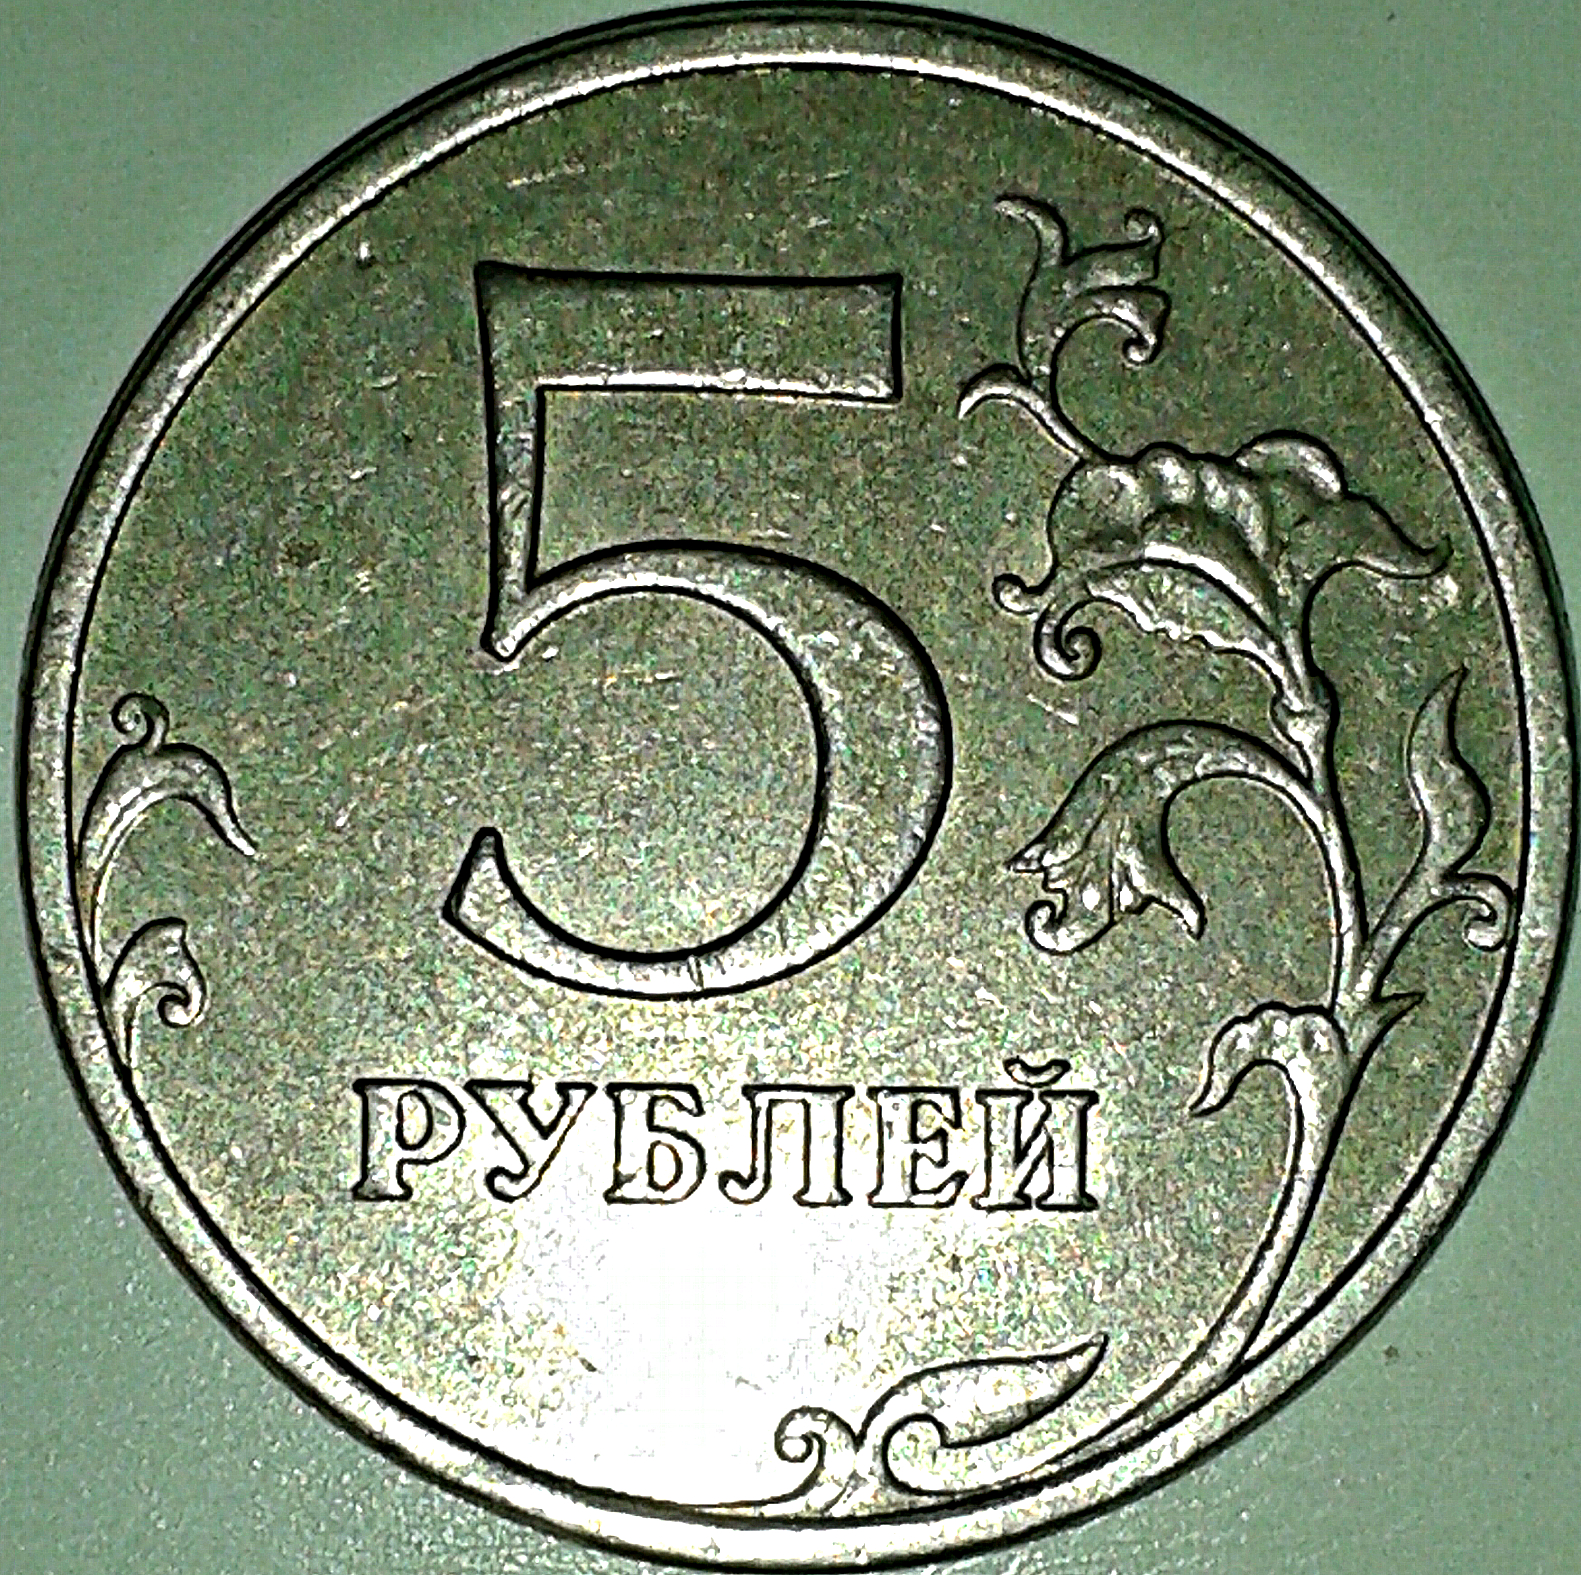 Цена 5 рублей со. 5 Рублей 2009 ММД немагнитная. Штемпель ММД 5 рублей рублей. 5 Рублей 2009 штемпель. 5 Рублей 2009 года немагнитные.